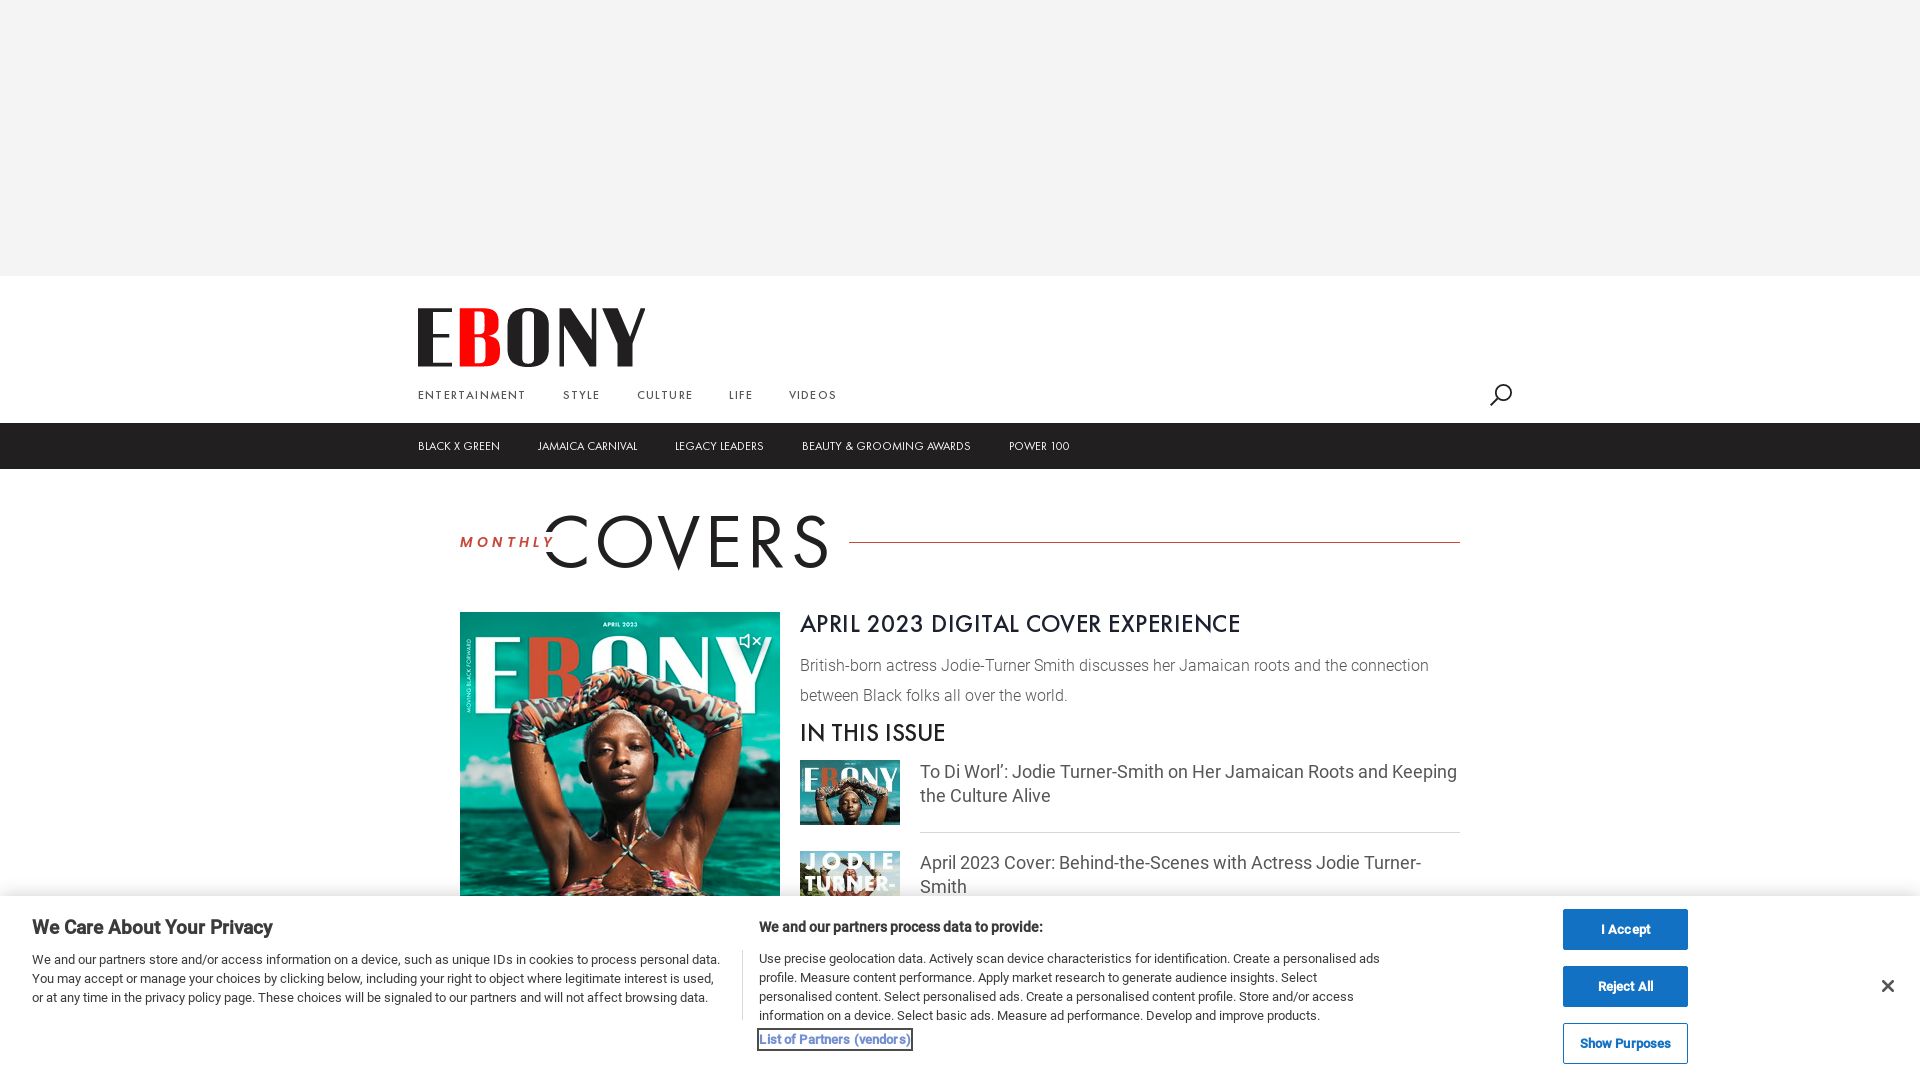 вебсайт ebony.com Є   ONLINE